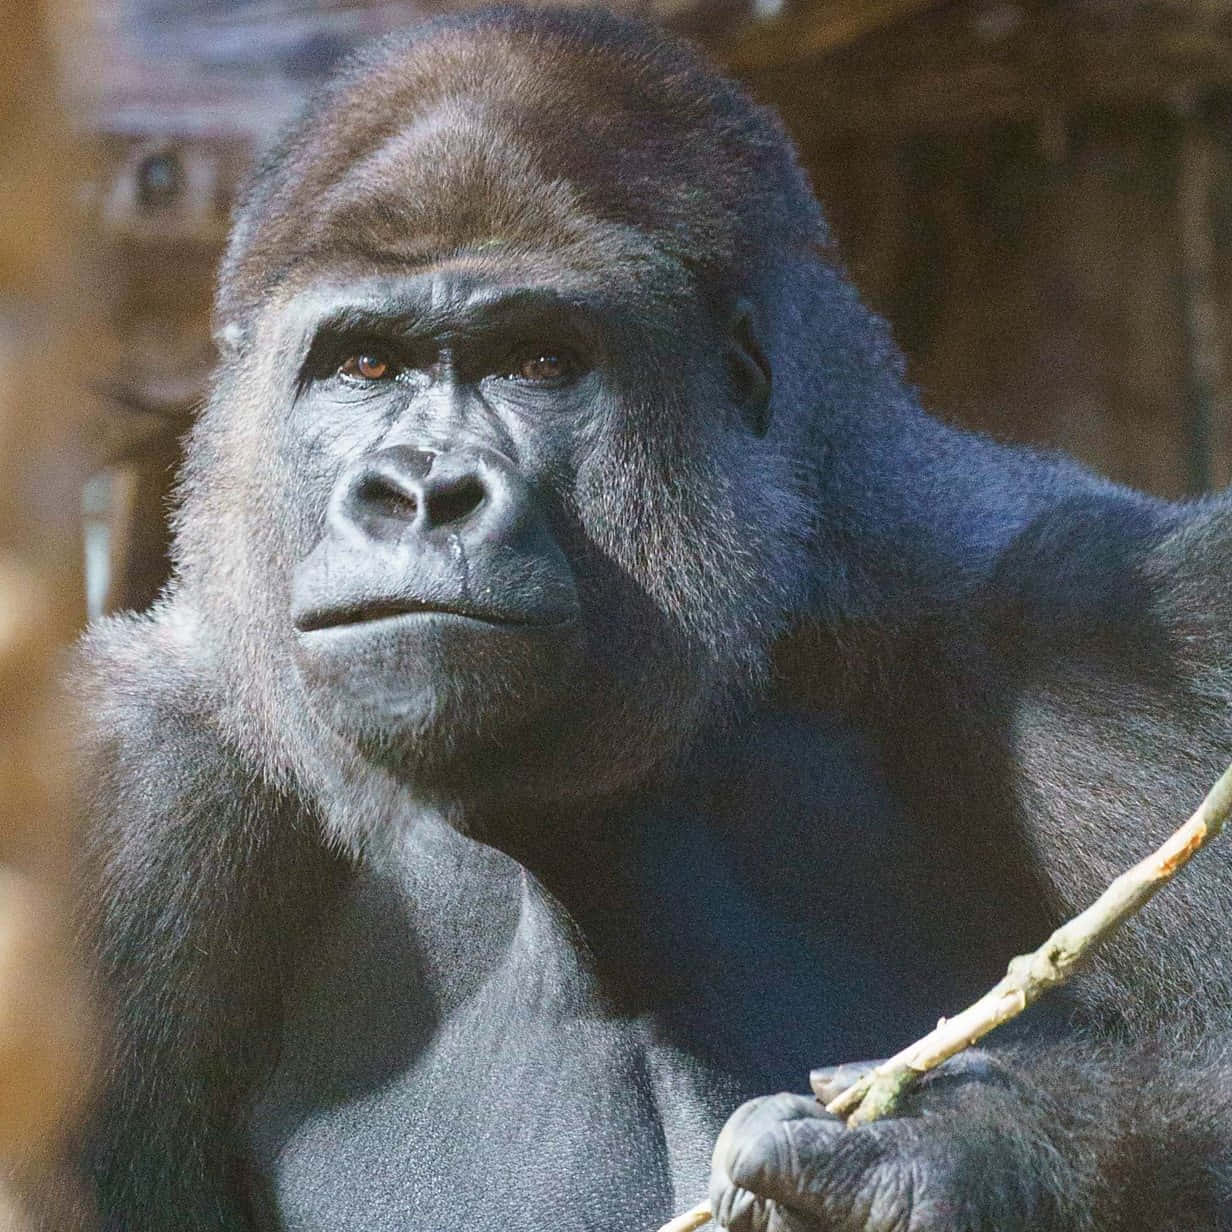 A close-up of a Gorilla in its natural habitat